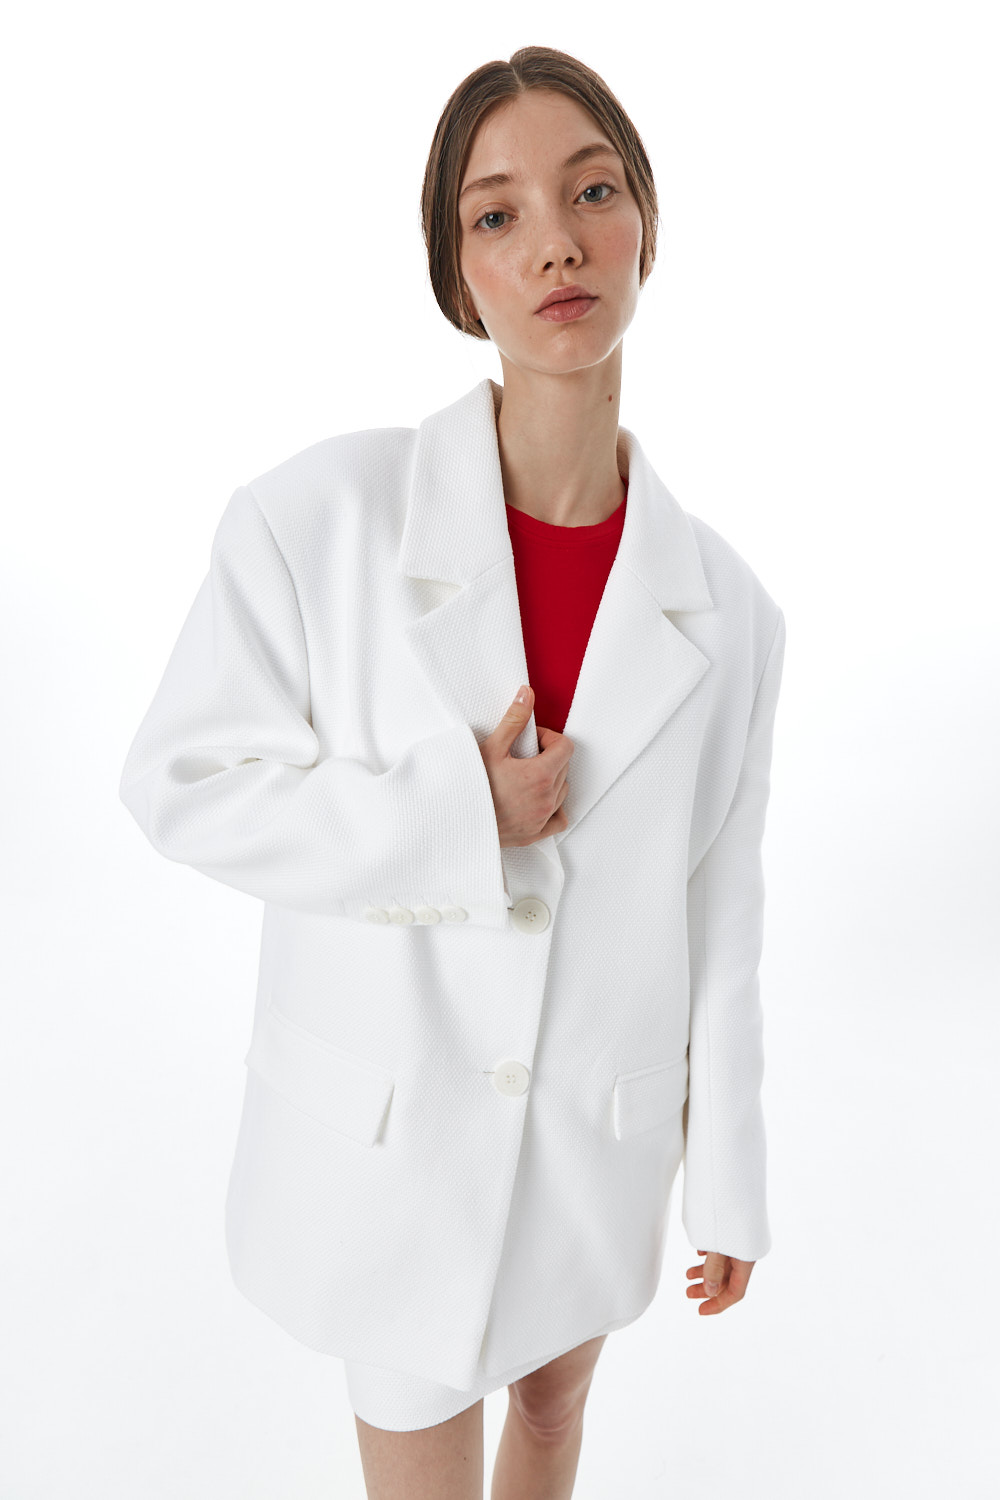 Пальто-пиджак женское, хлопковая шанель, белая рогожка